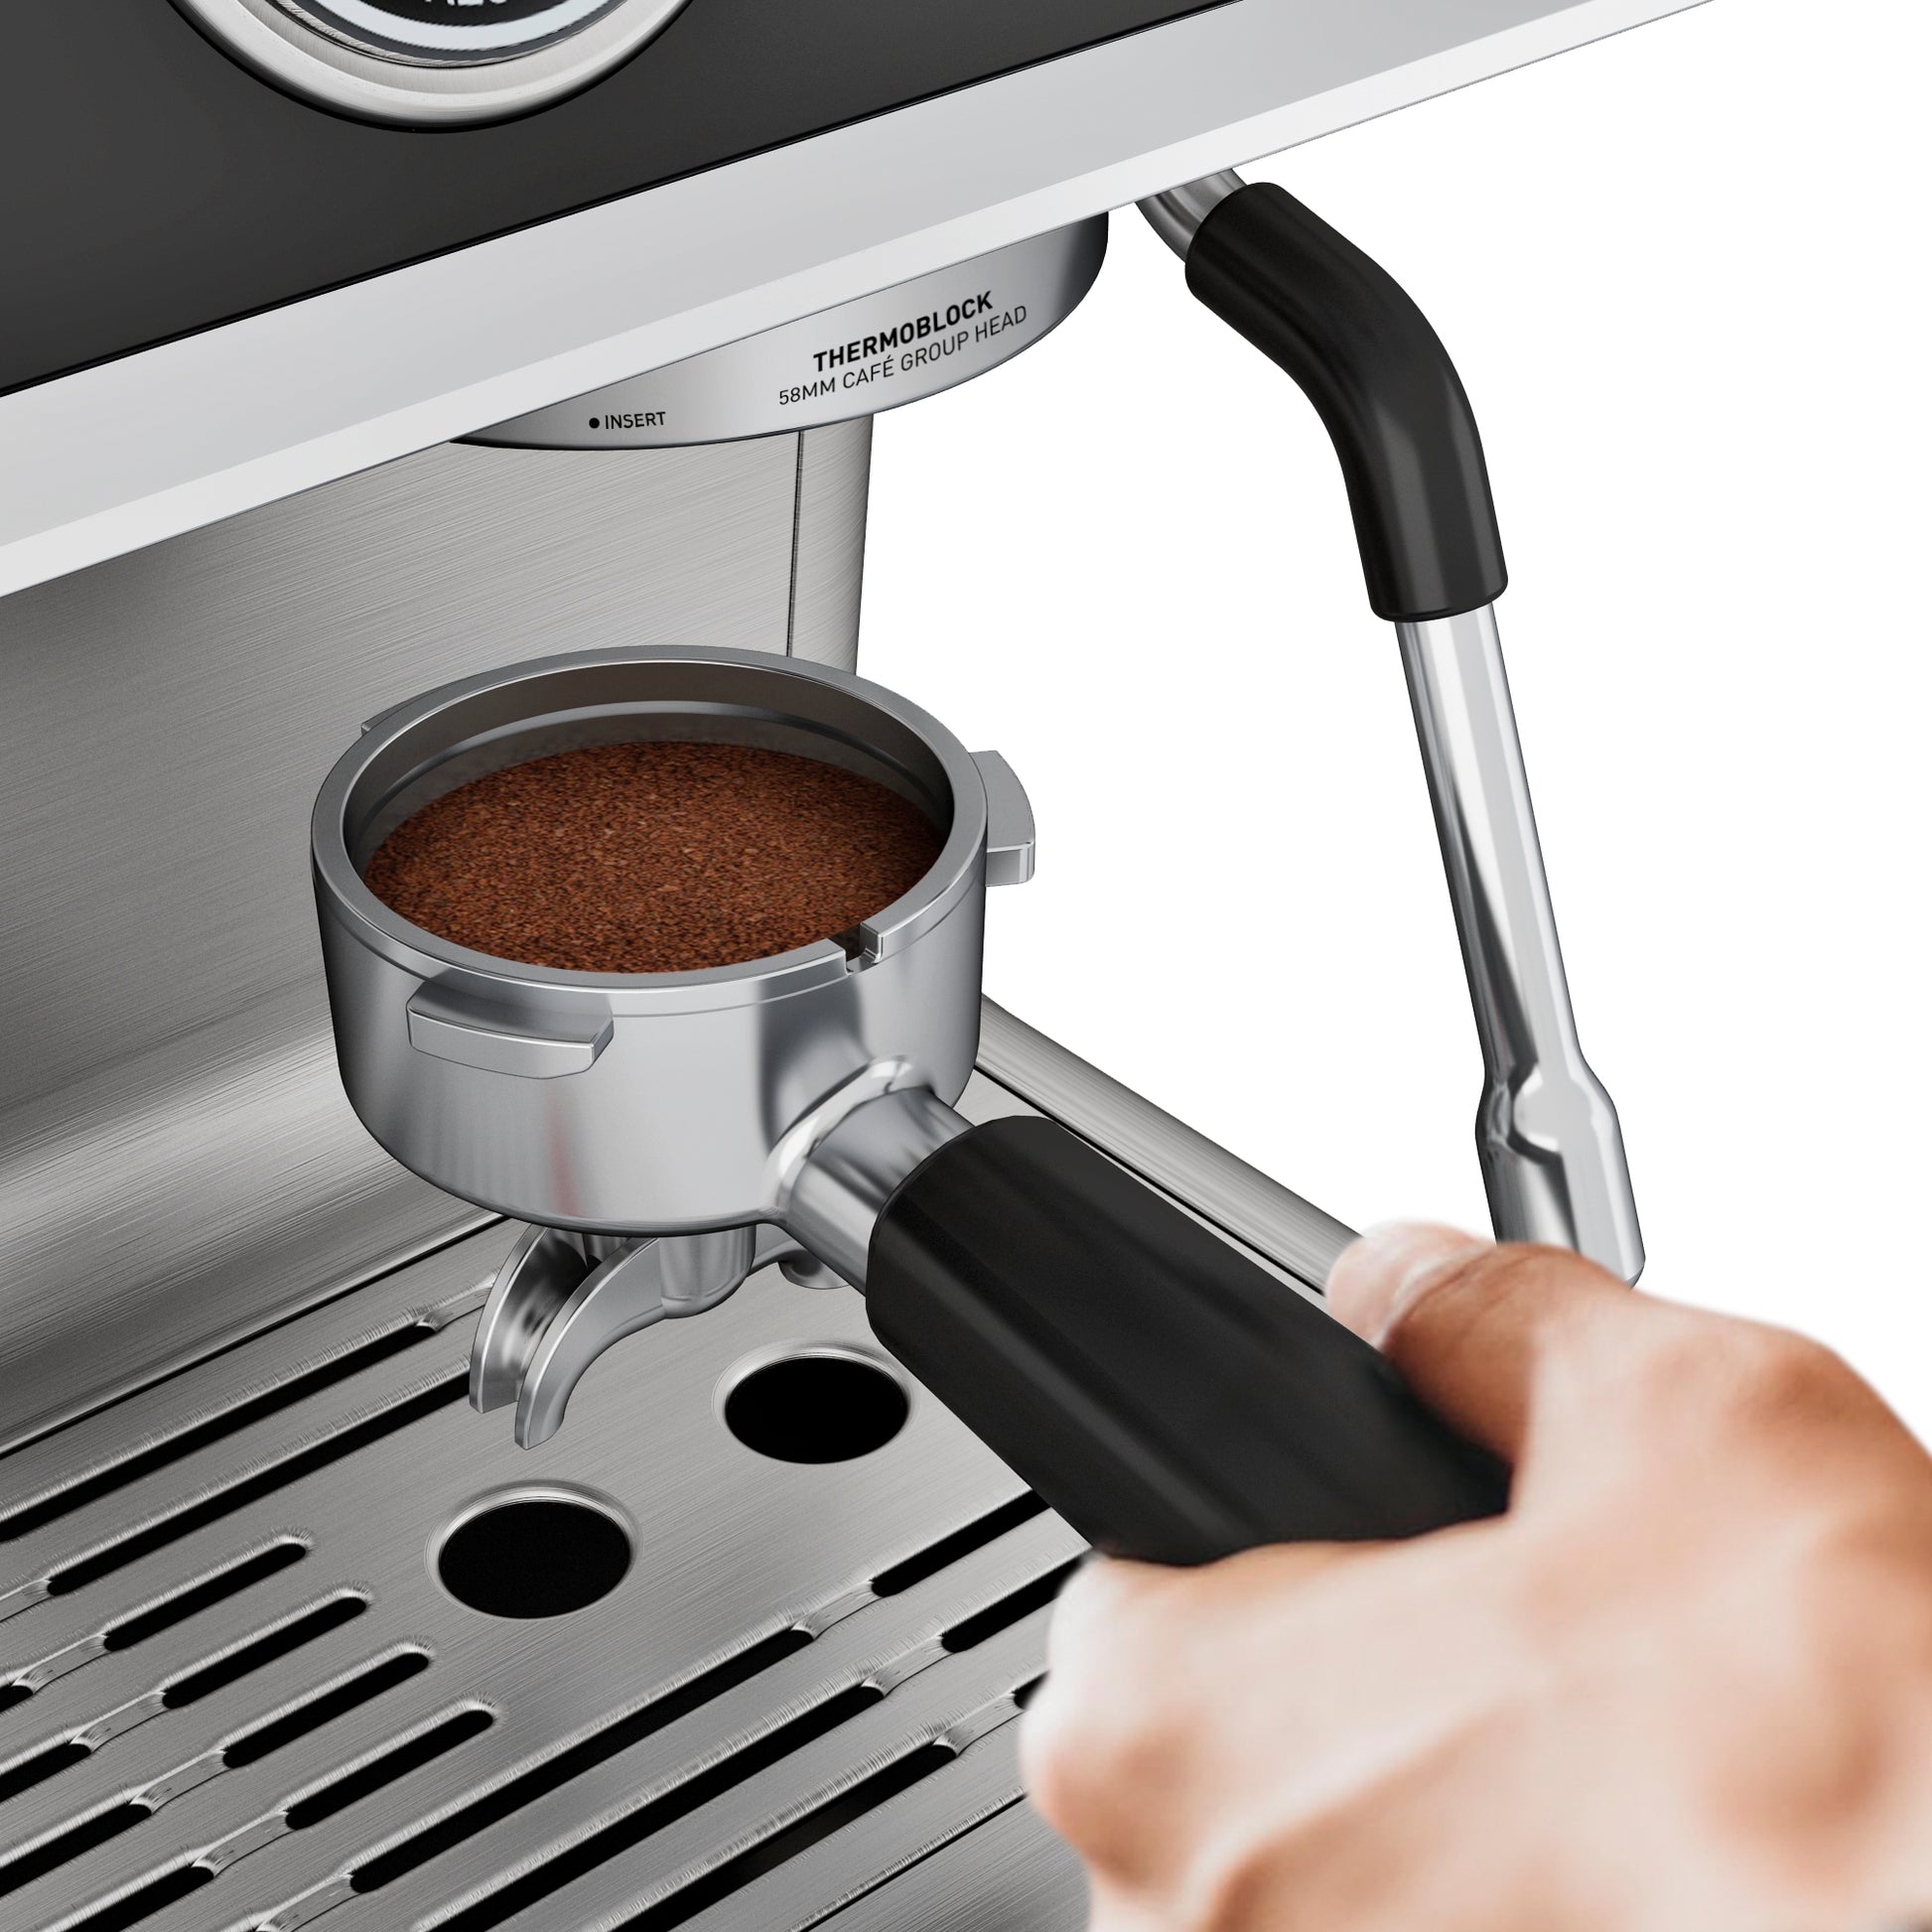 <img src="espresso machine.jpg" alt="wirsh espresso machine 58mm portafilter"/>